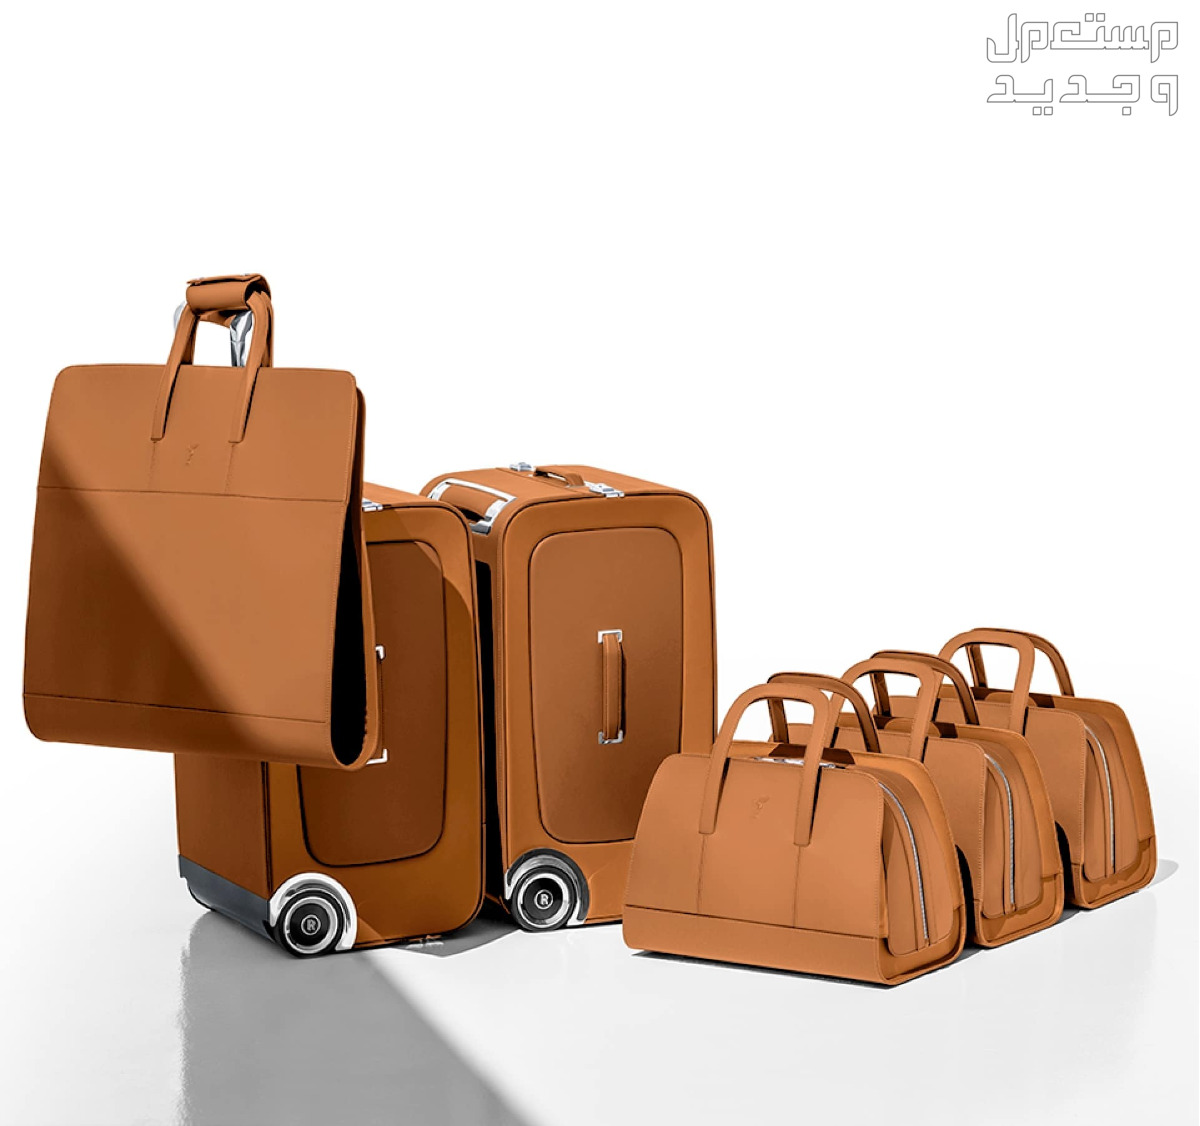 تعرف على أغلى حقيبة سفر في العالم في جيبوتي حقائب رولز رويس باللون البني